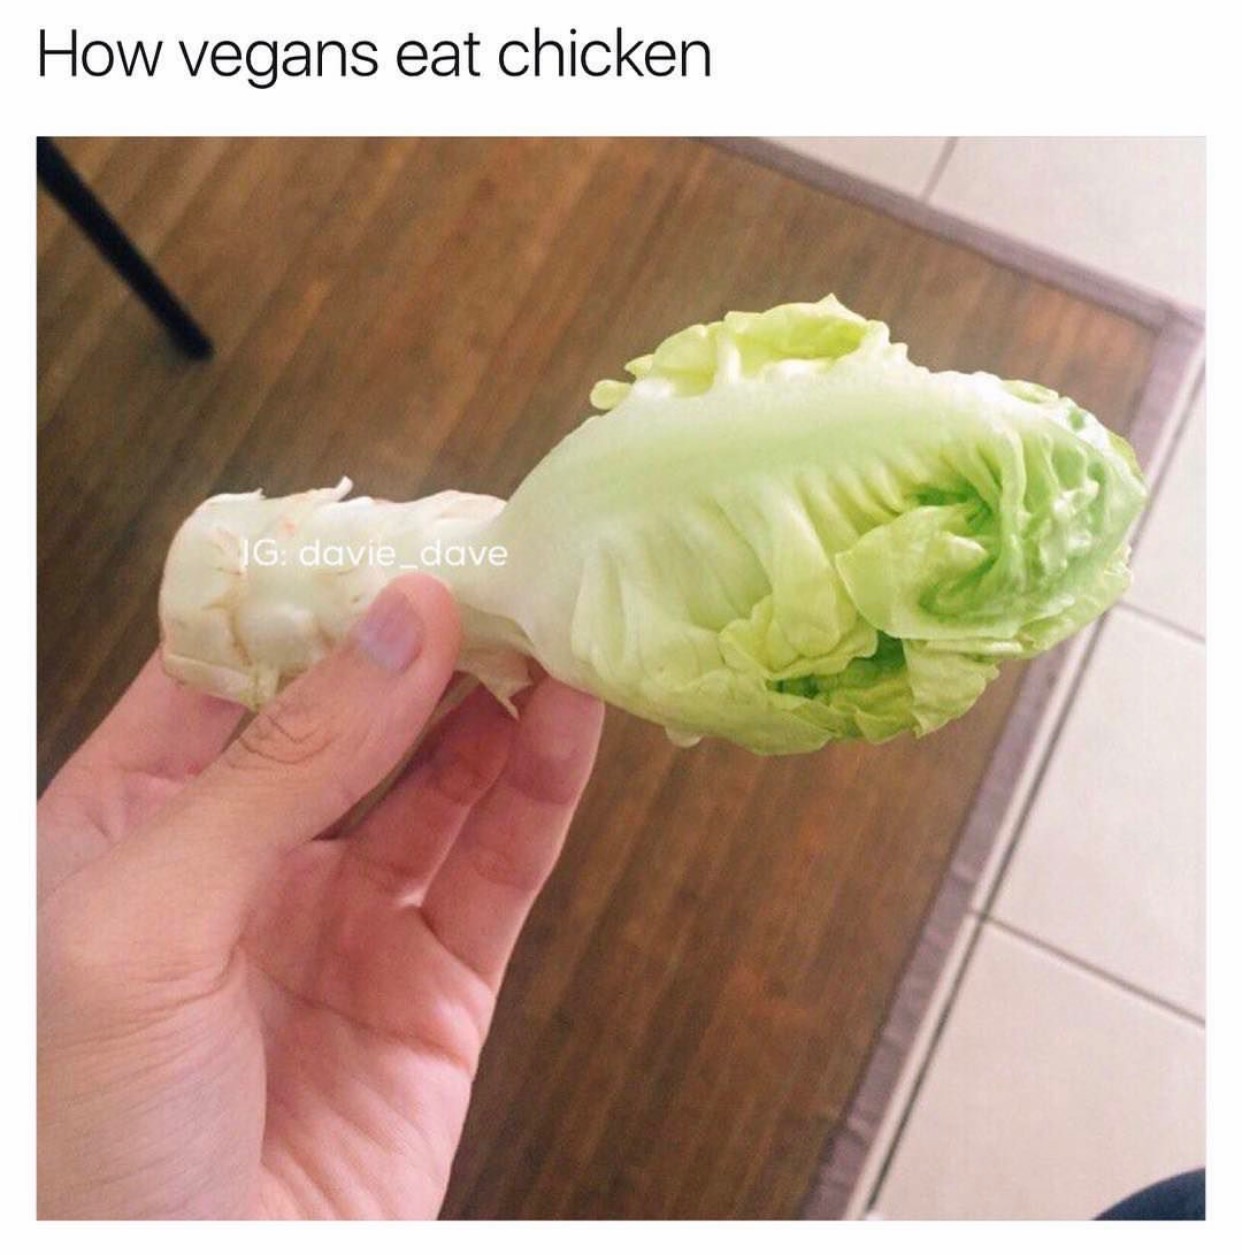 memes - How vegans eat chicken Jg davie_dave